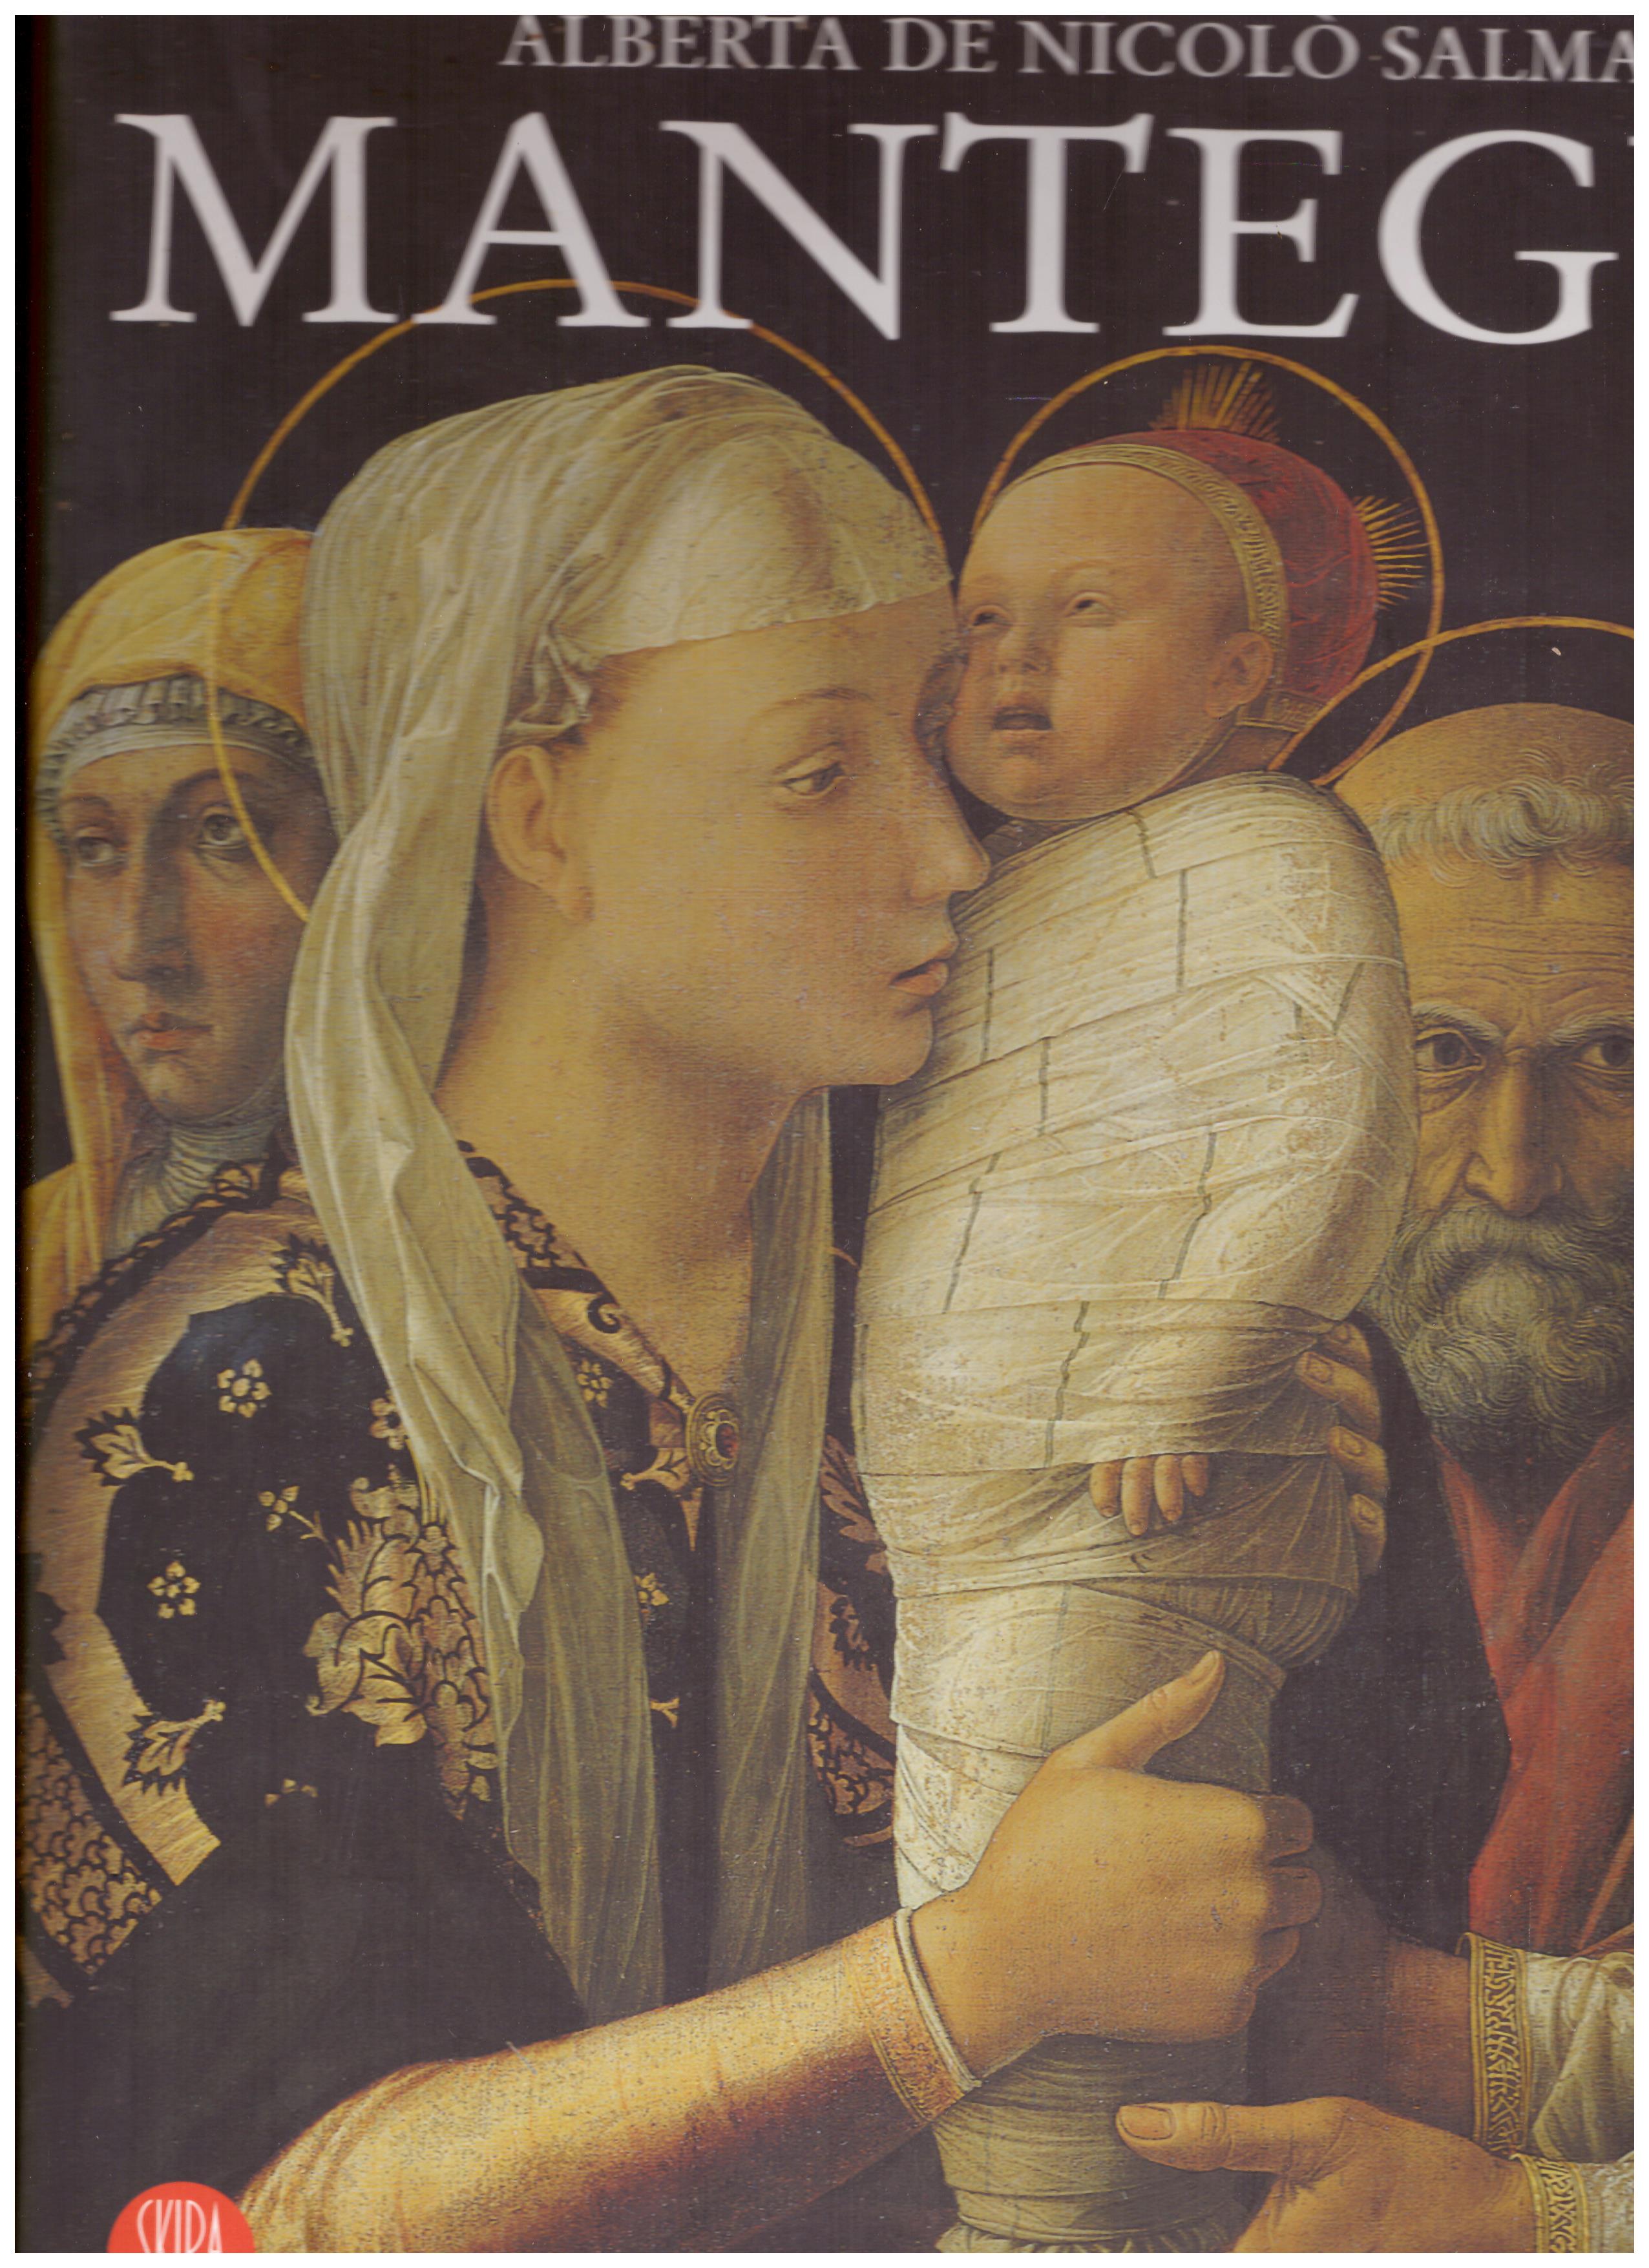 Titolo: Mantegna     Autore: Alberta De Nicolò Salmazo     Editore: Rizzoli